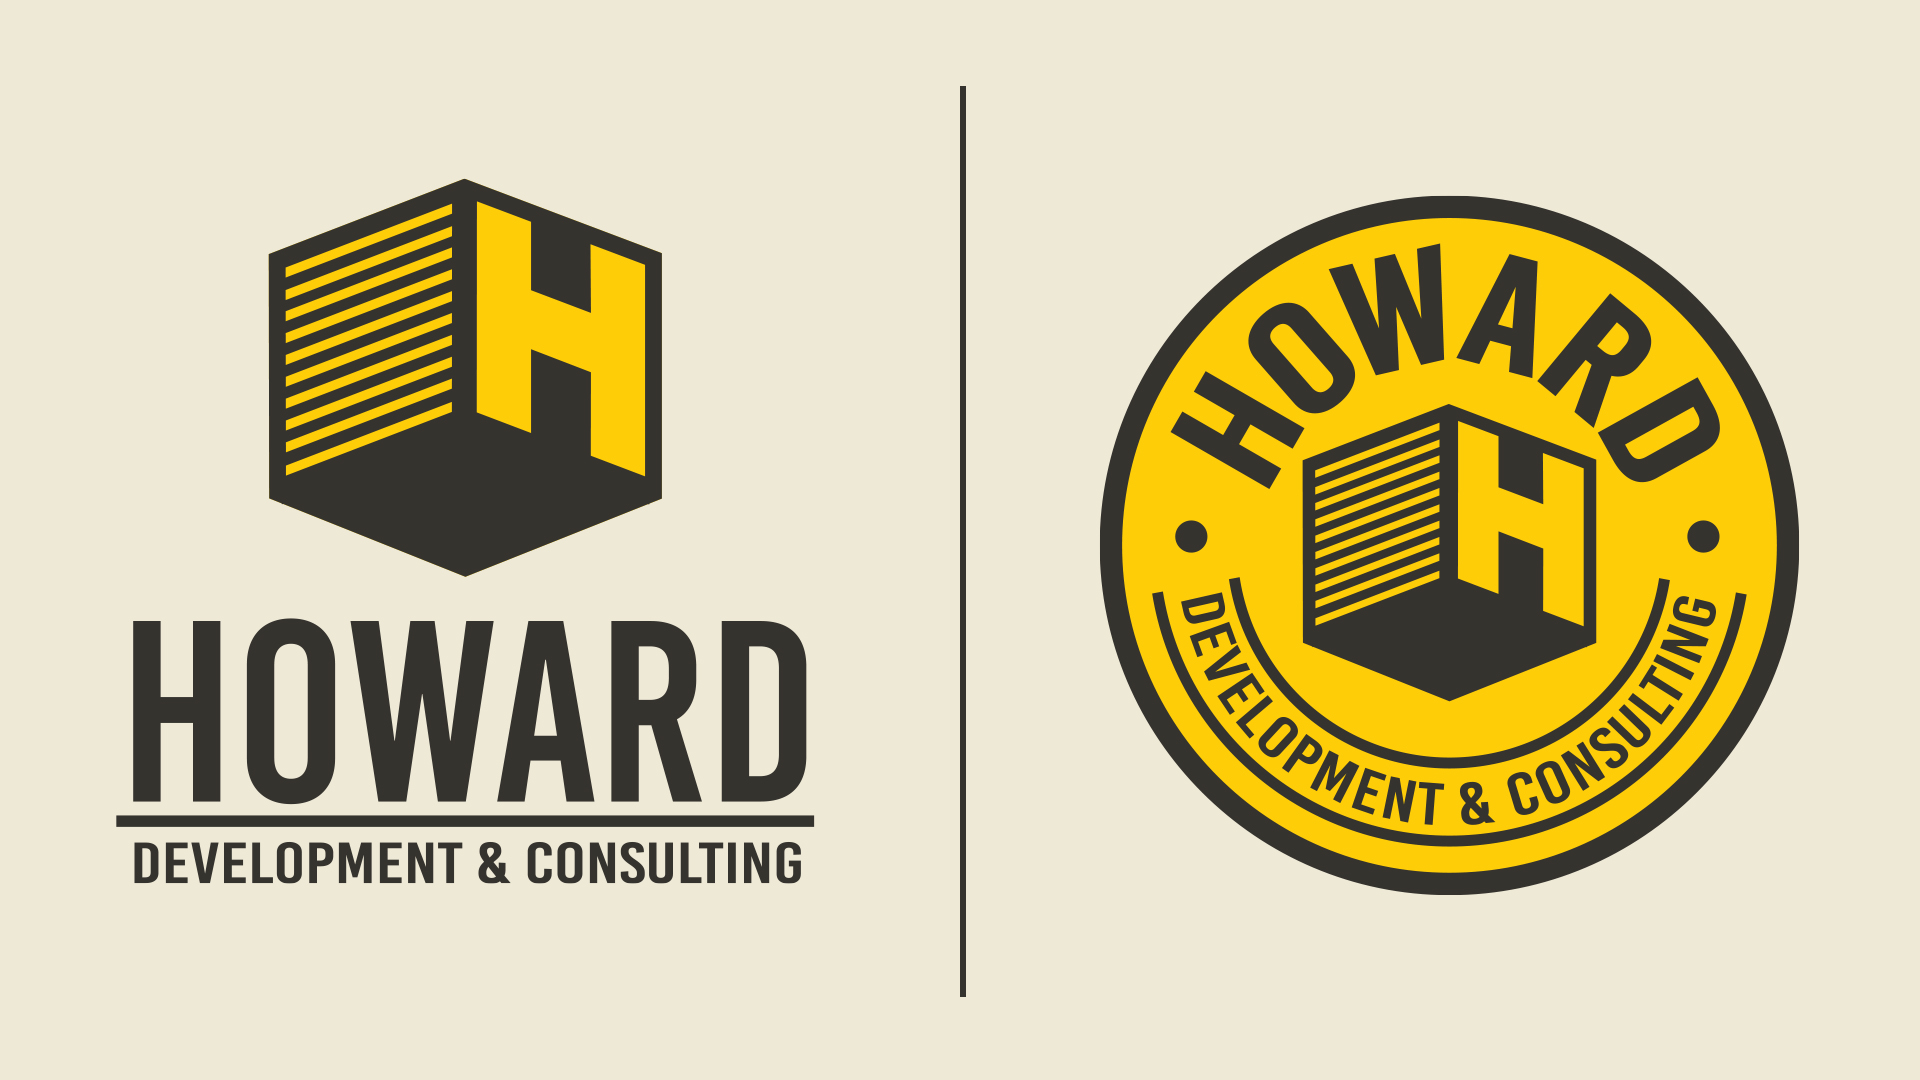 Howard Developments secondary logos